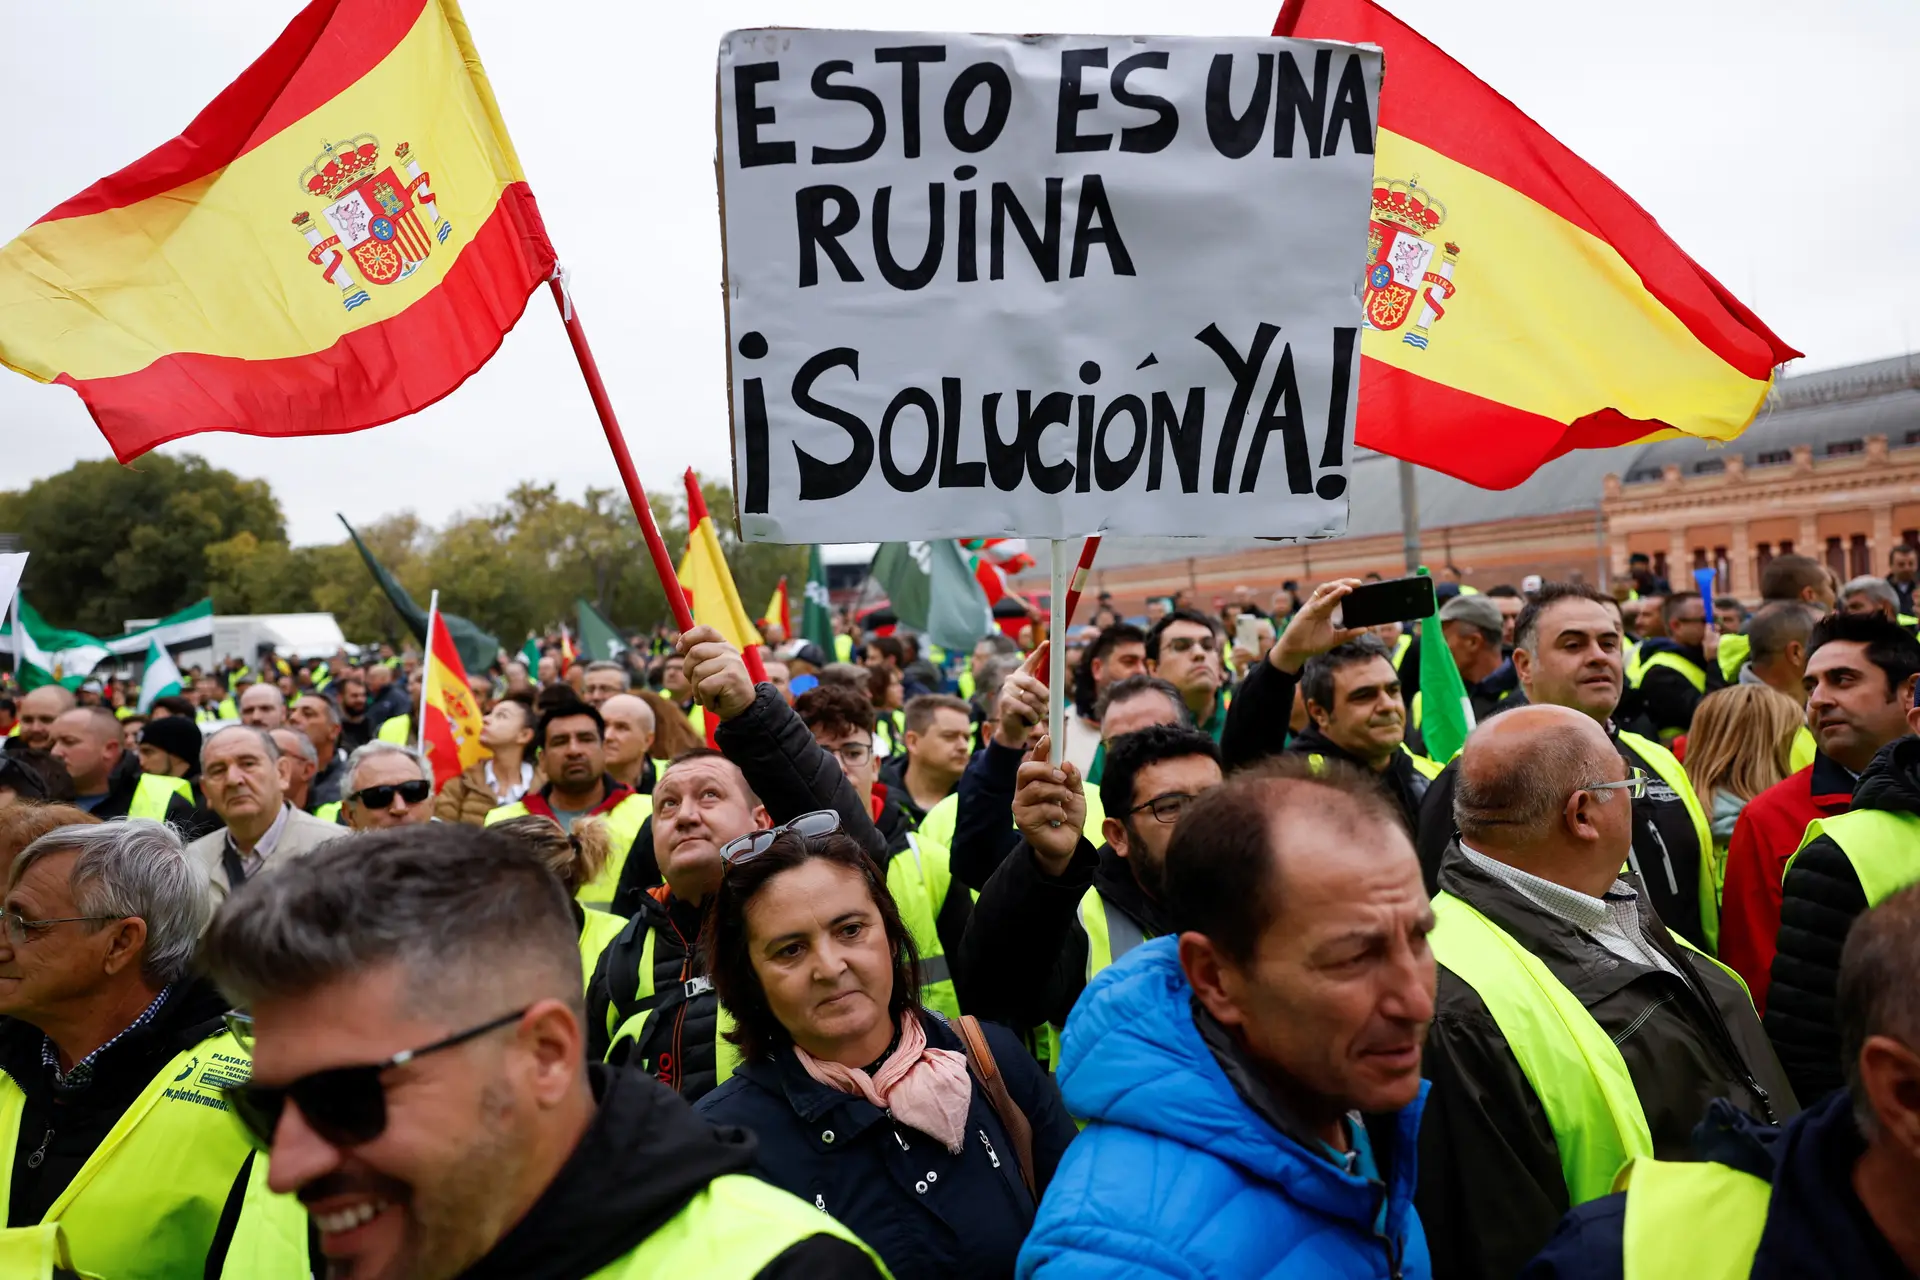 Camionistas espanhóis voltam à greve